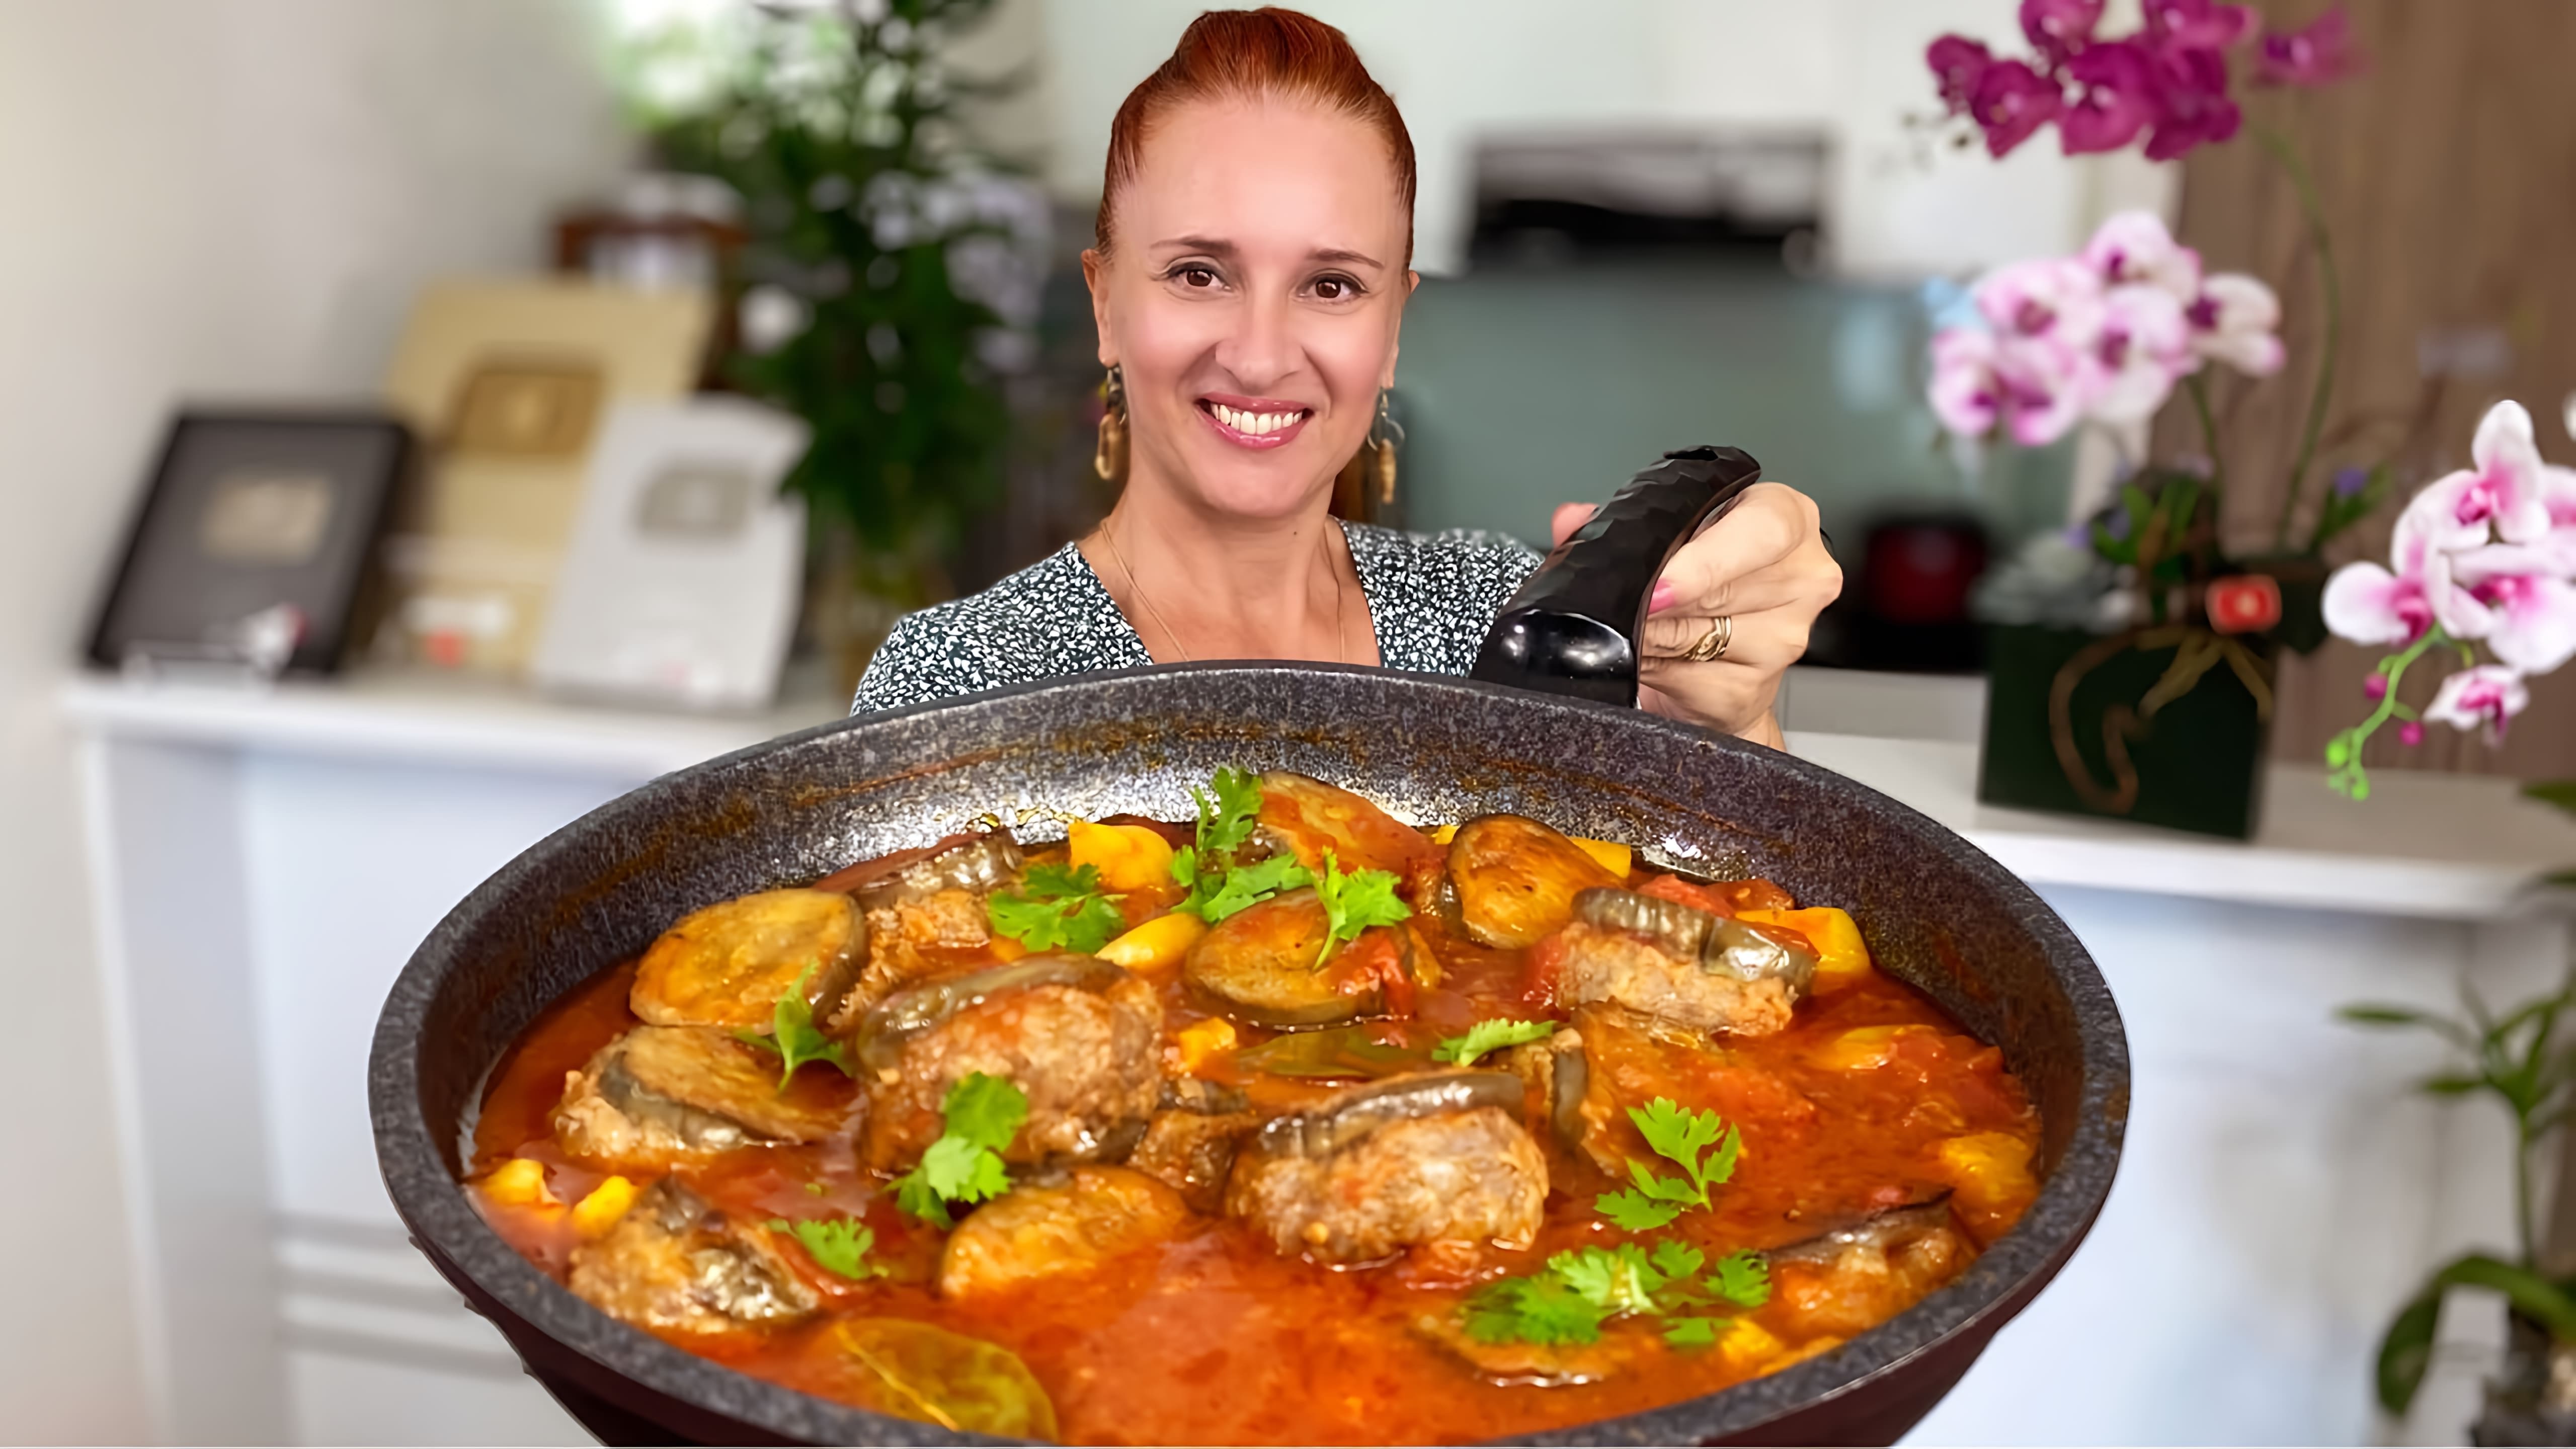 Видео как приготовить быстрое и простое блюдо из баклажанов, начиненных мясом и приготовленных в томатном соусе